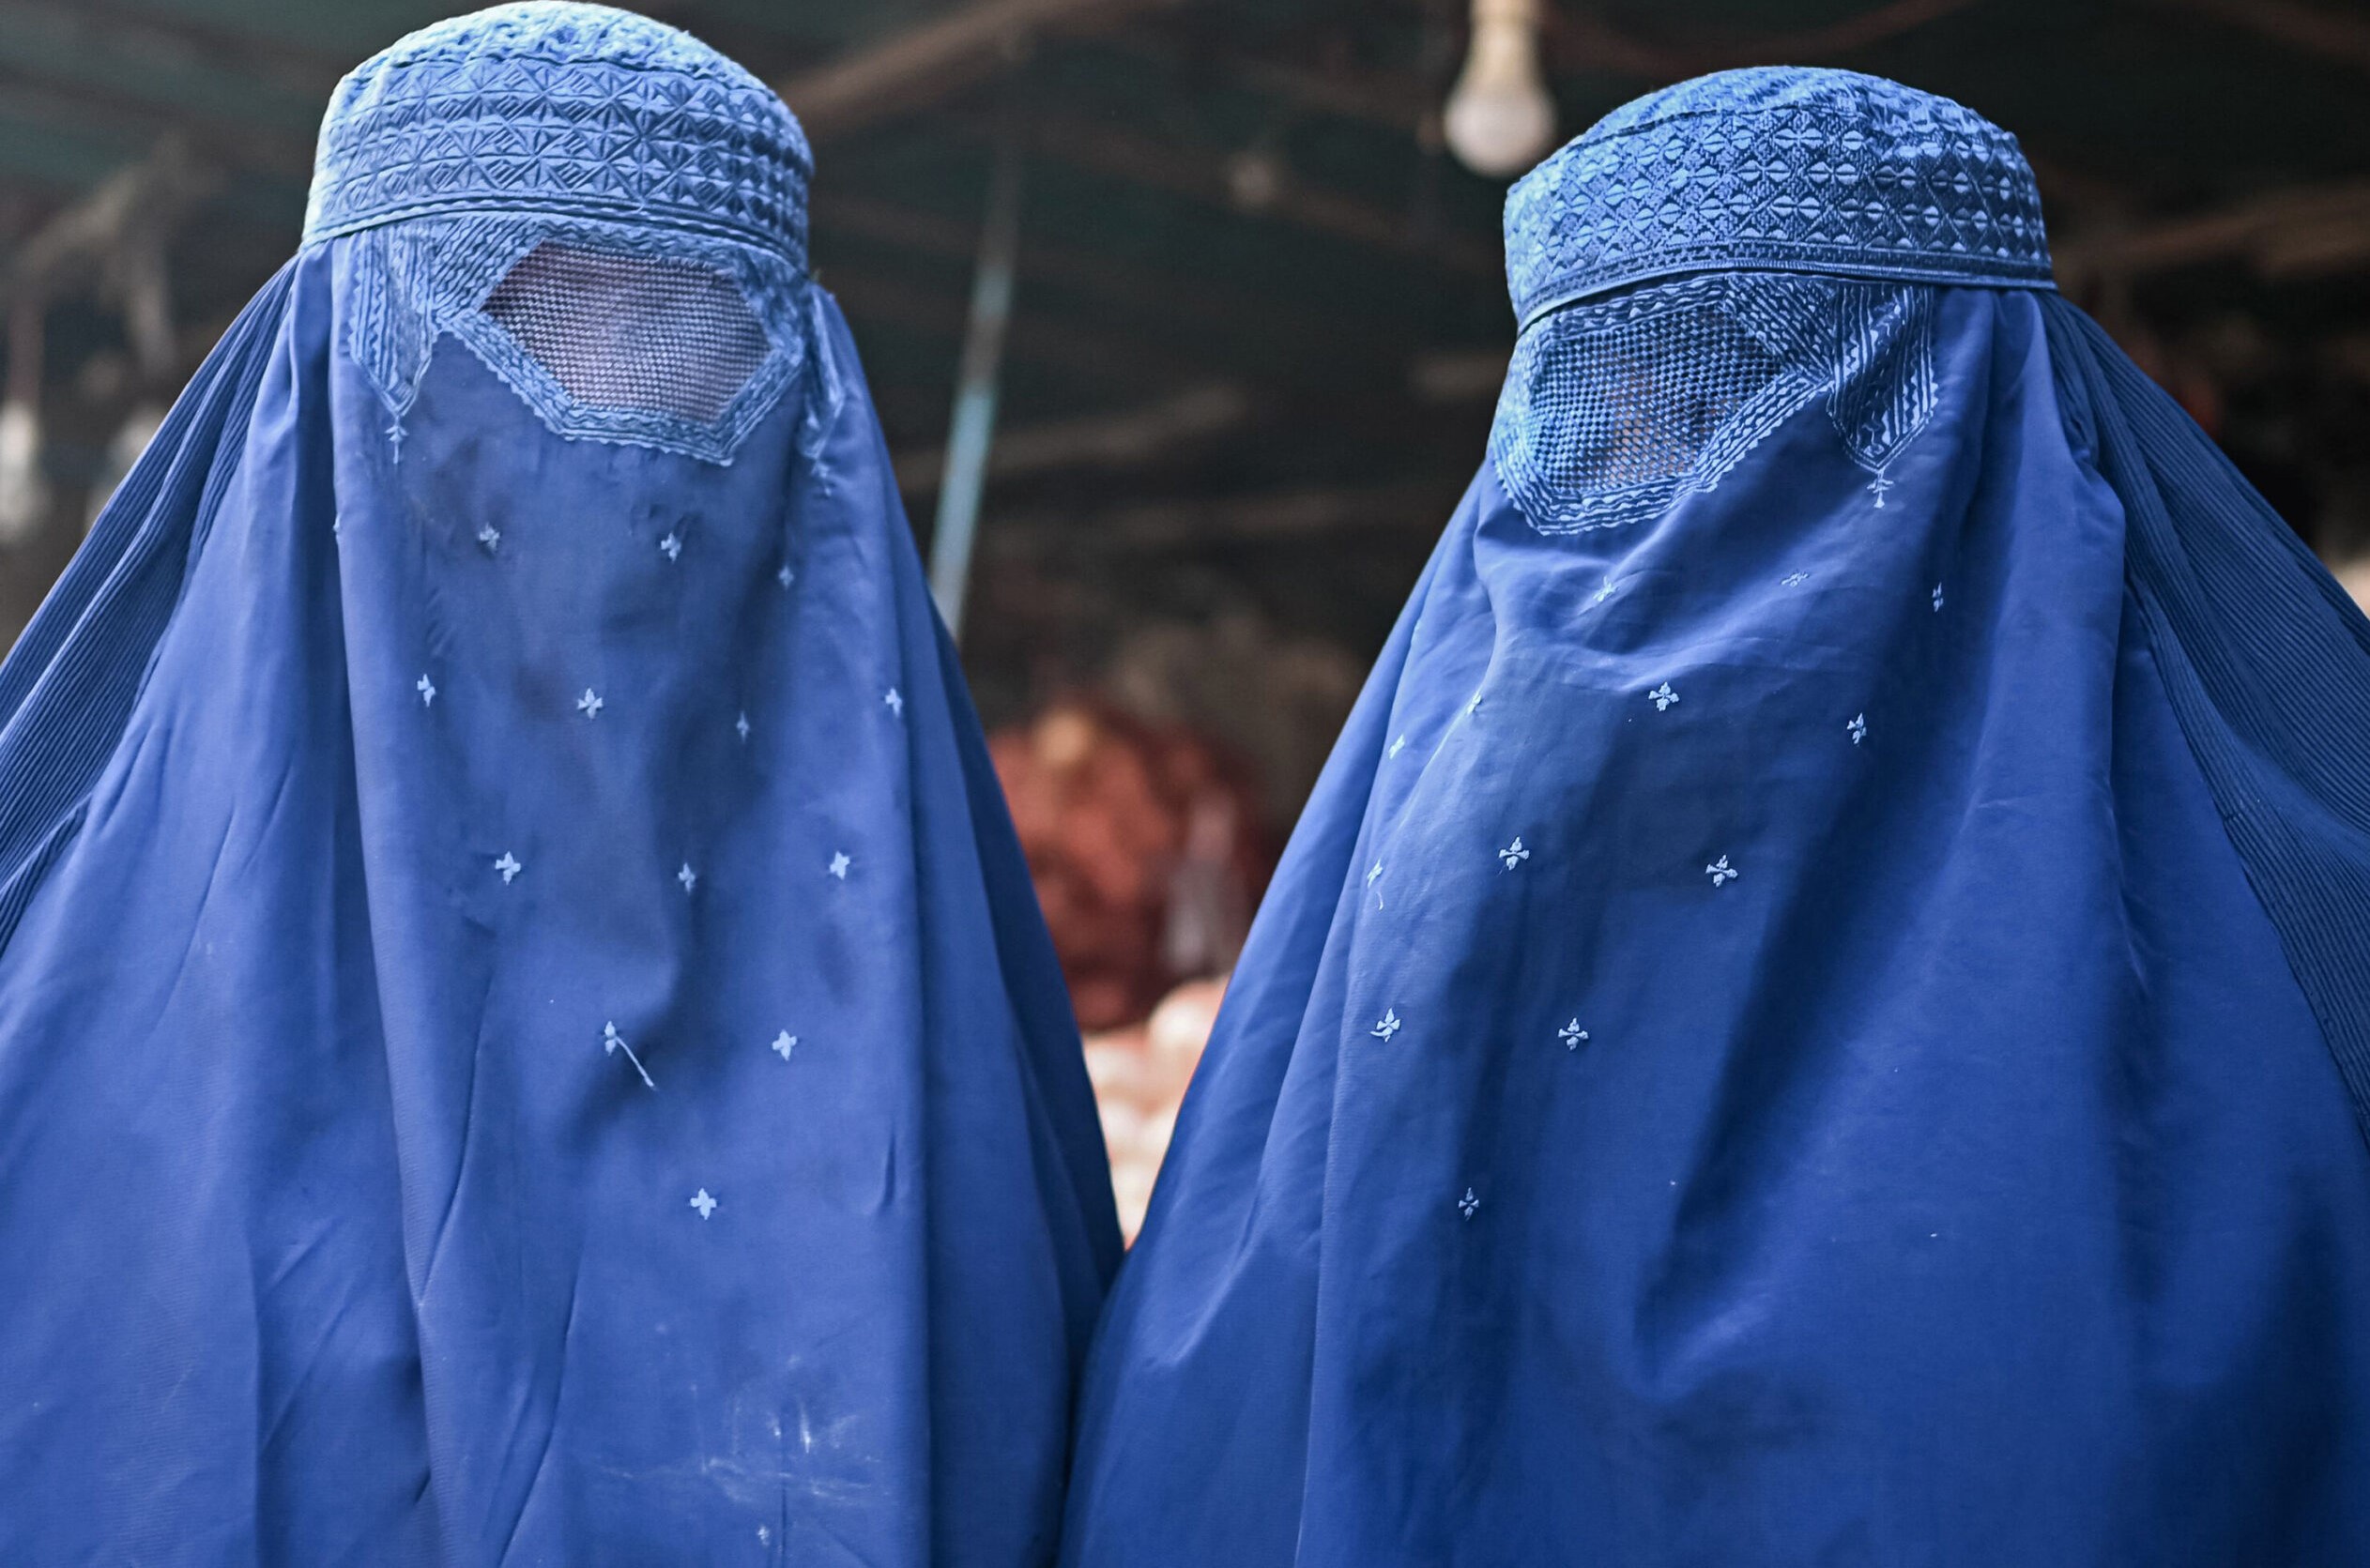 Wanawake wa Afghanistan wapinga agizo la Taliban kufunika nyuso na vazi la burqa